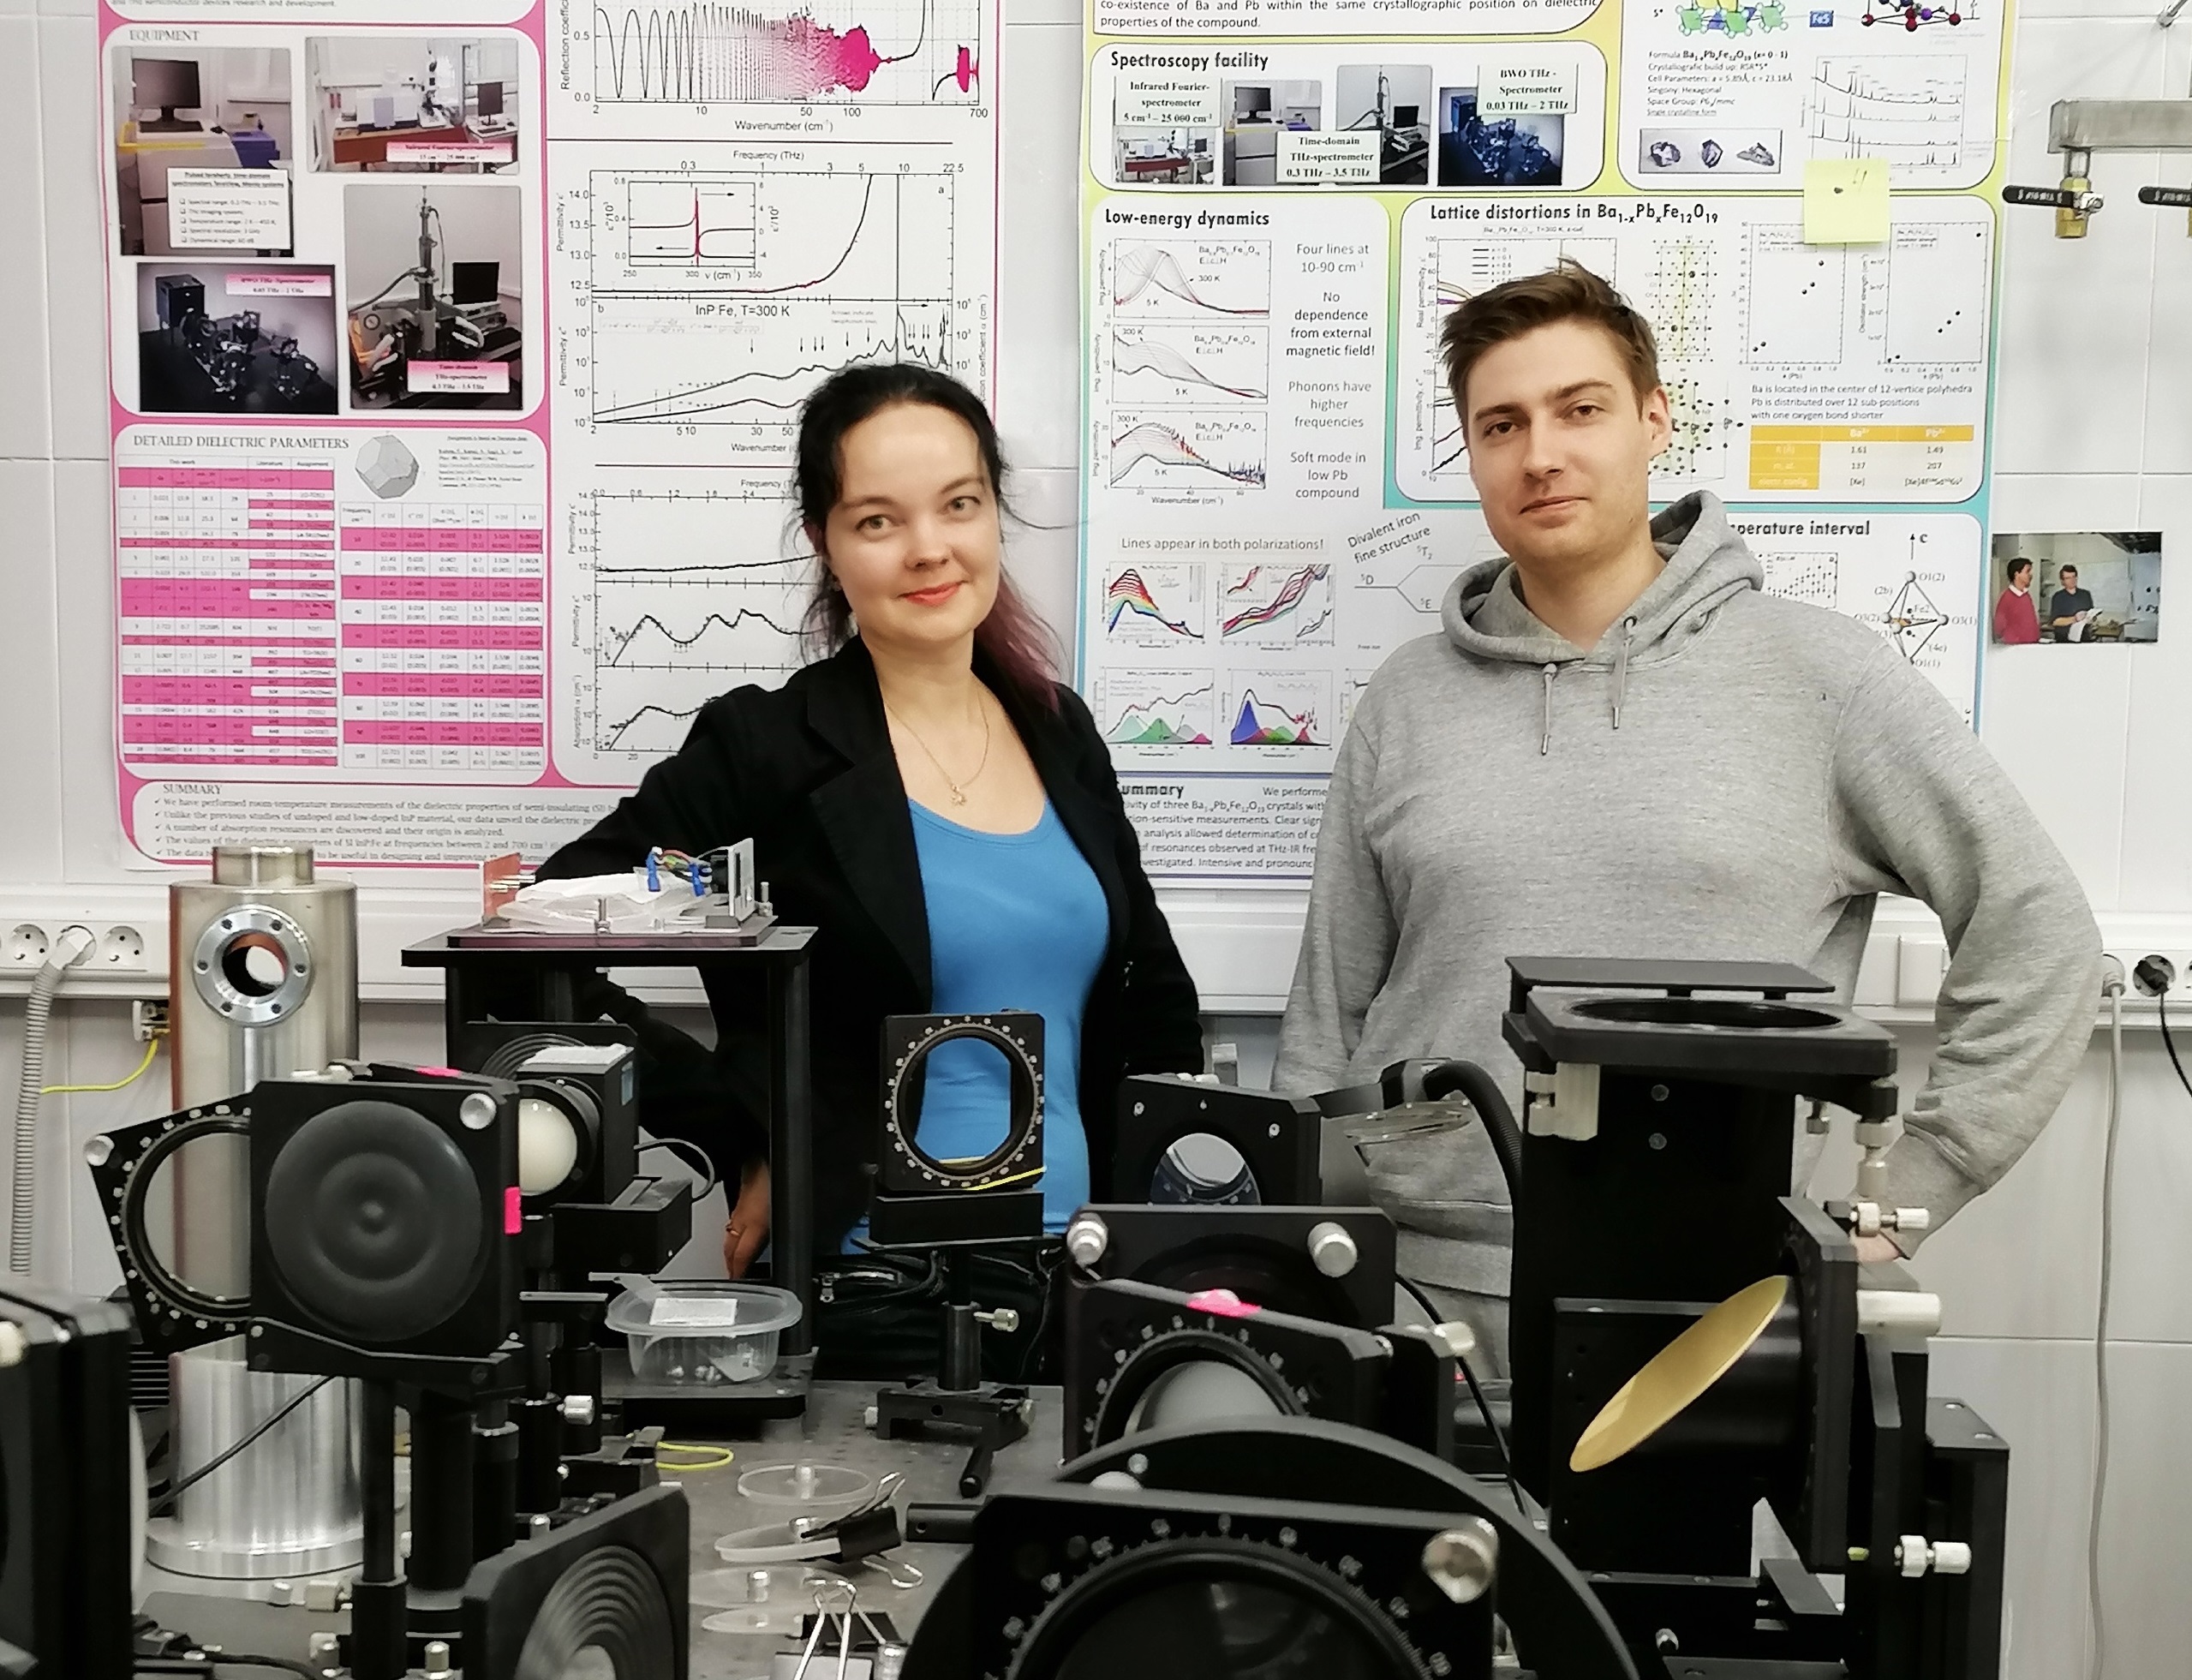 Российские ученые получили магнитный нанопорошок для 6G-технологий